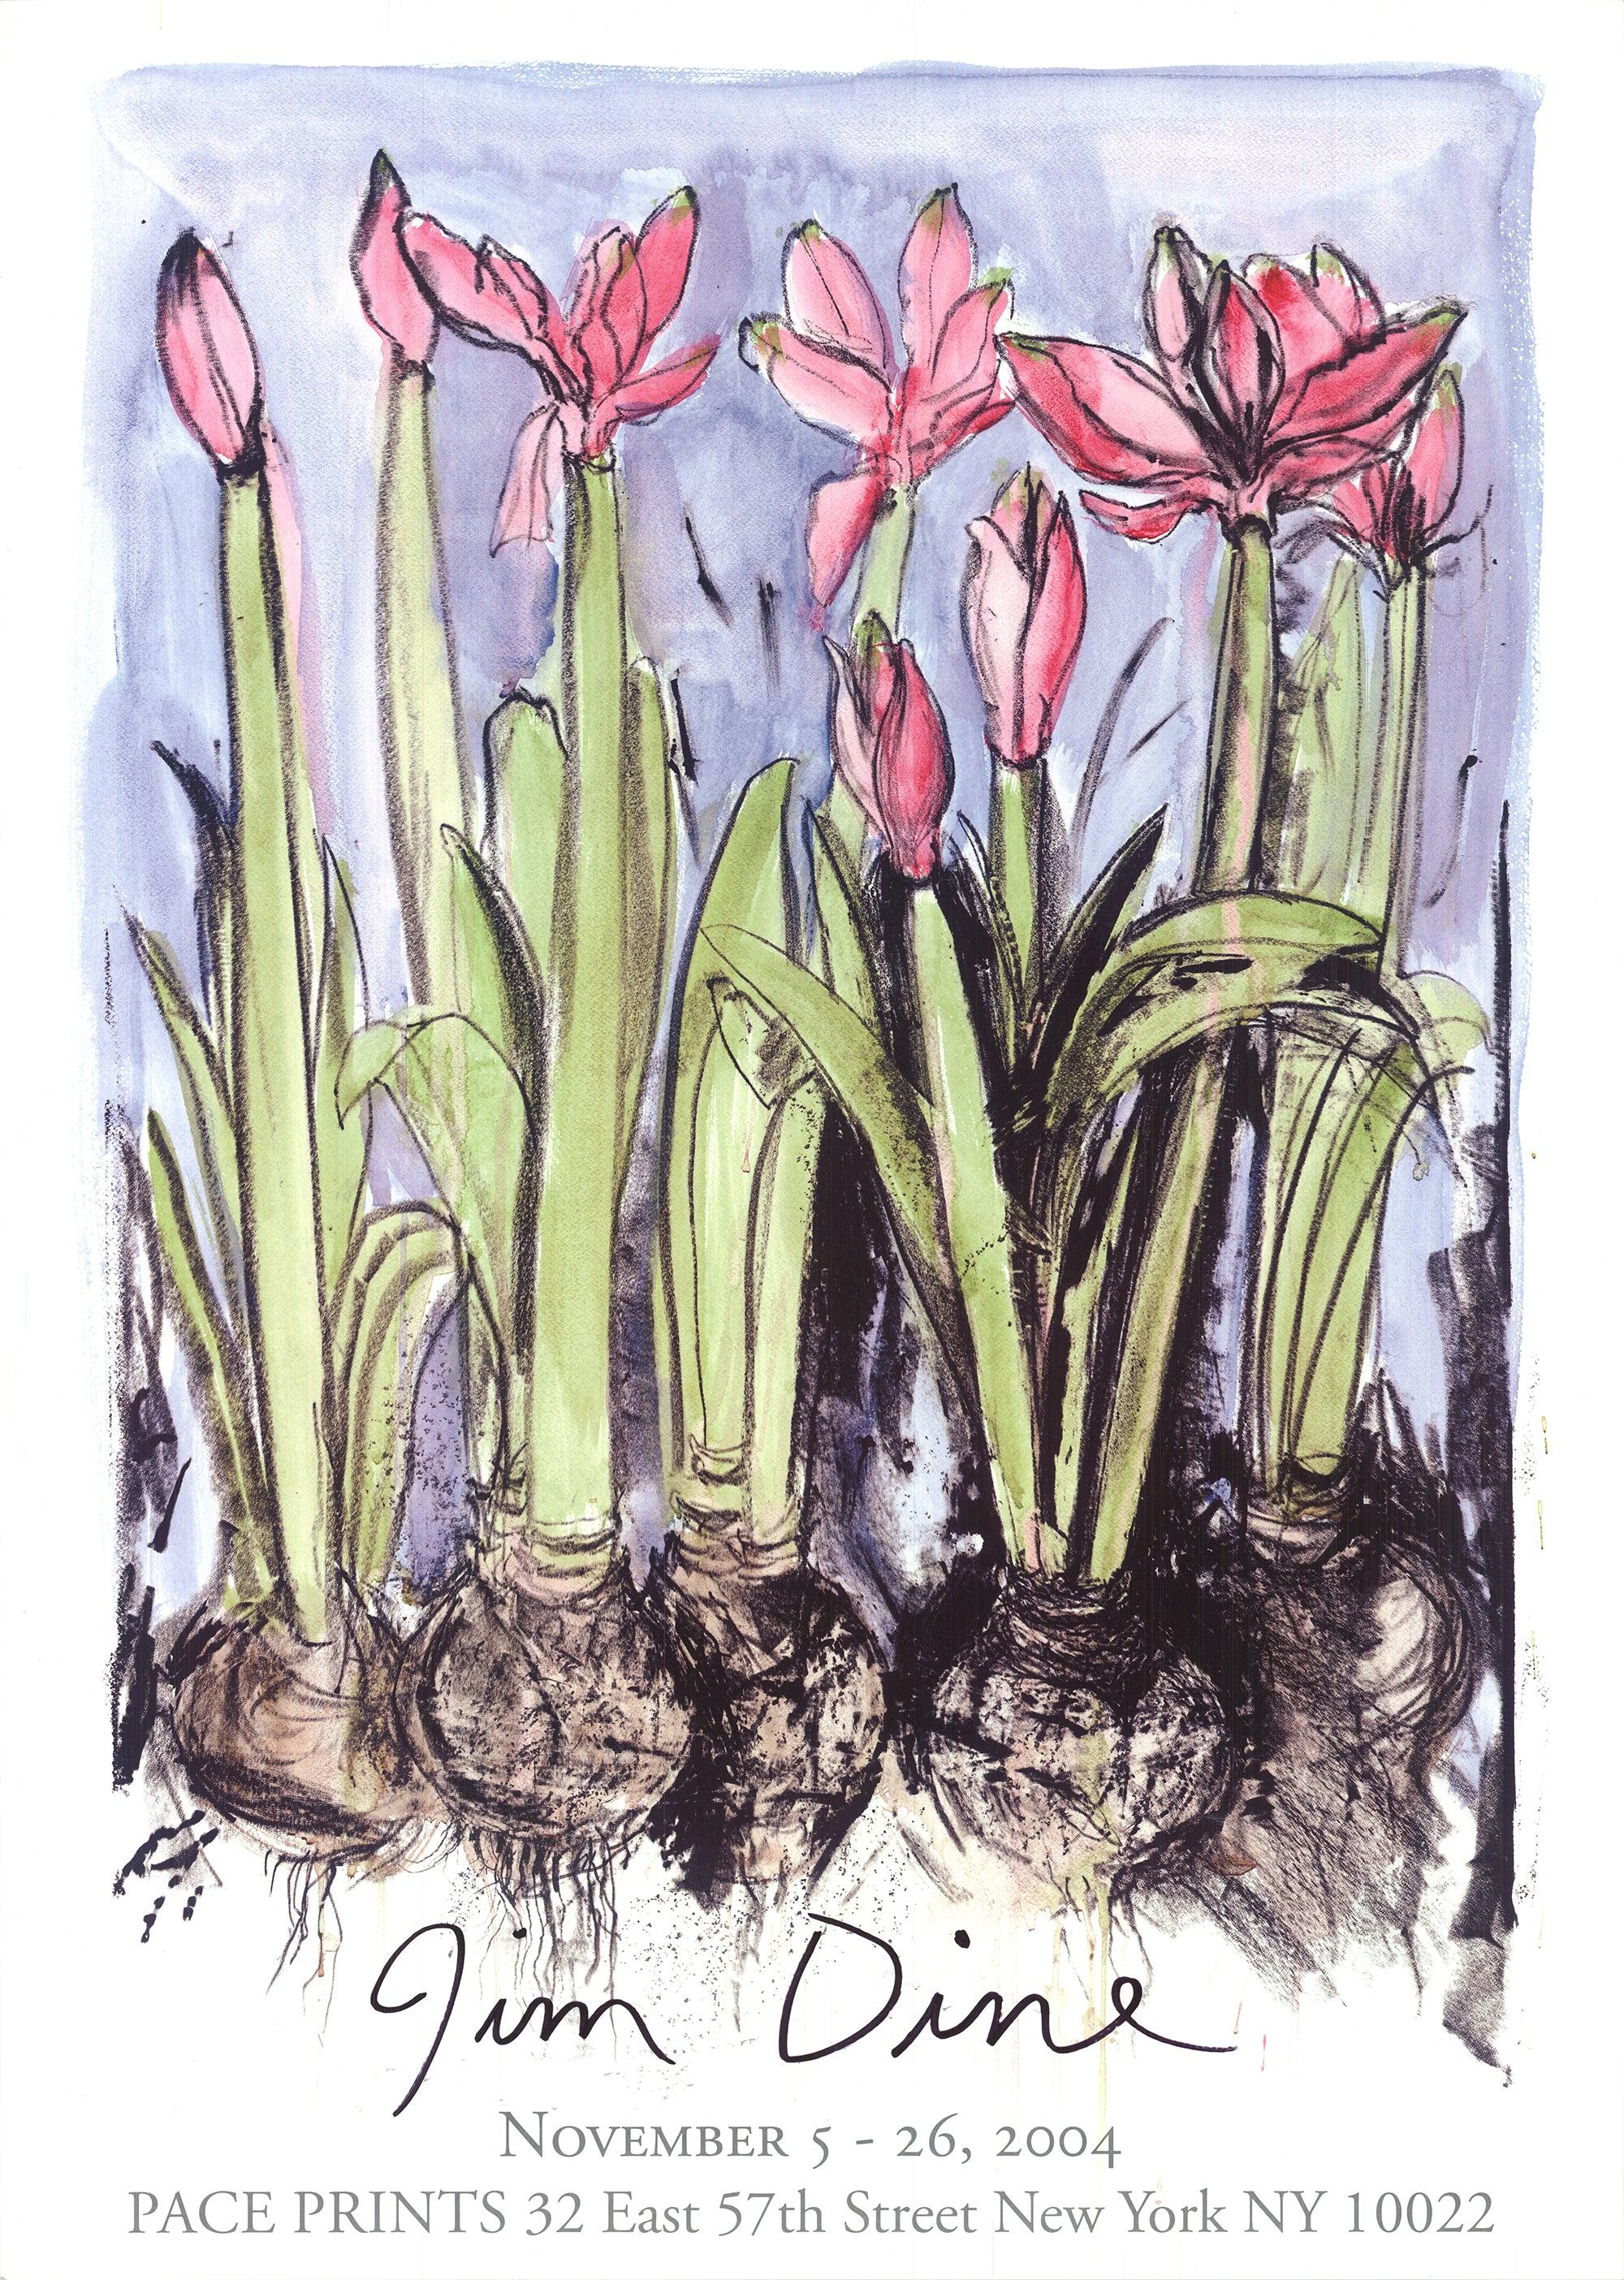 L'exposition de Jim Dine à Pace Prints en novembre 2004, avec son œuvre "Anemones", a mis en lumière la fascination durable de l'artiste pour les fleurs et les motifs botaniques.

Jim Dine est réputé pour sa profonde exploration des fleurs comme